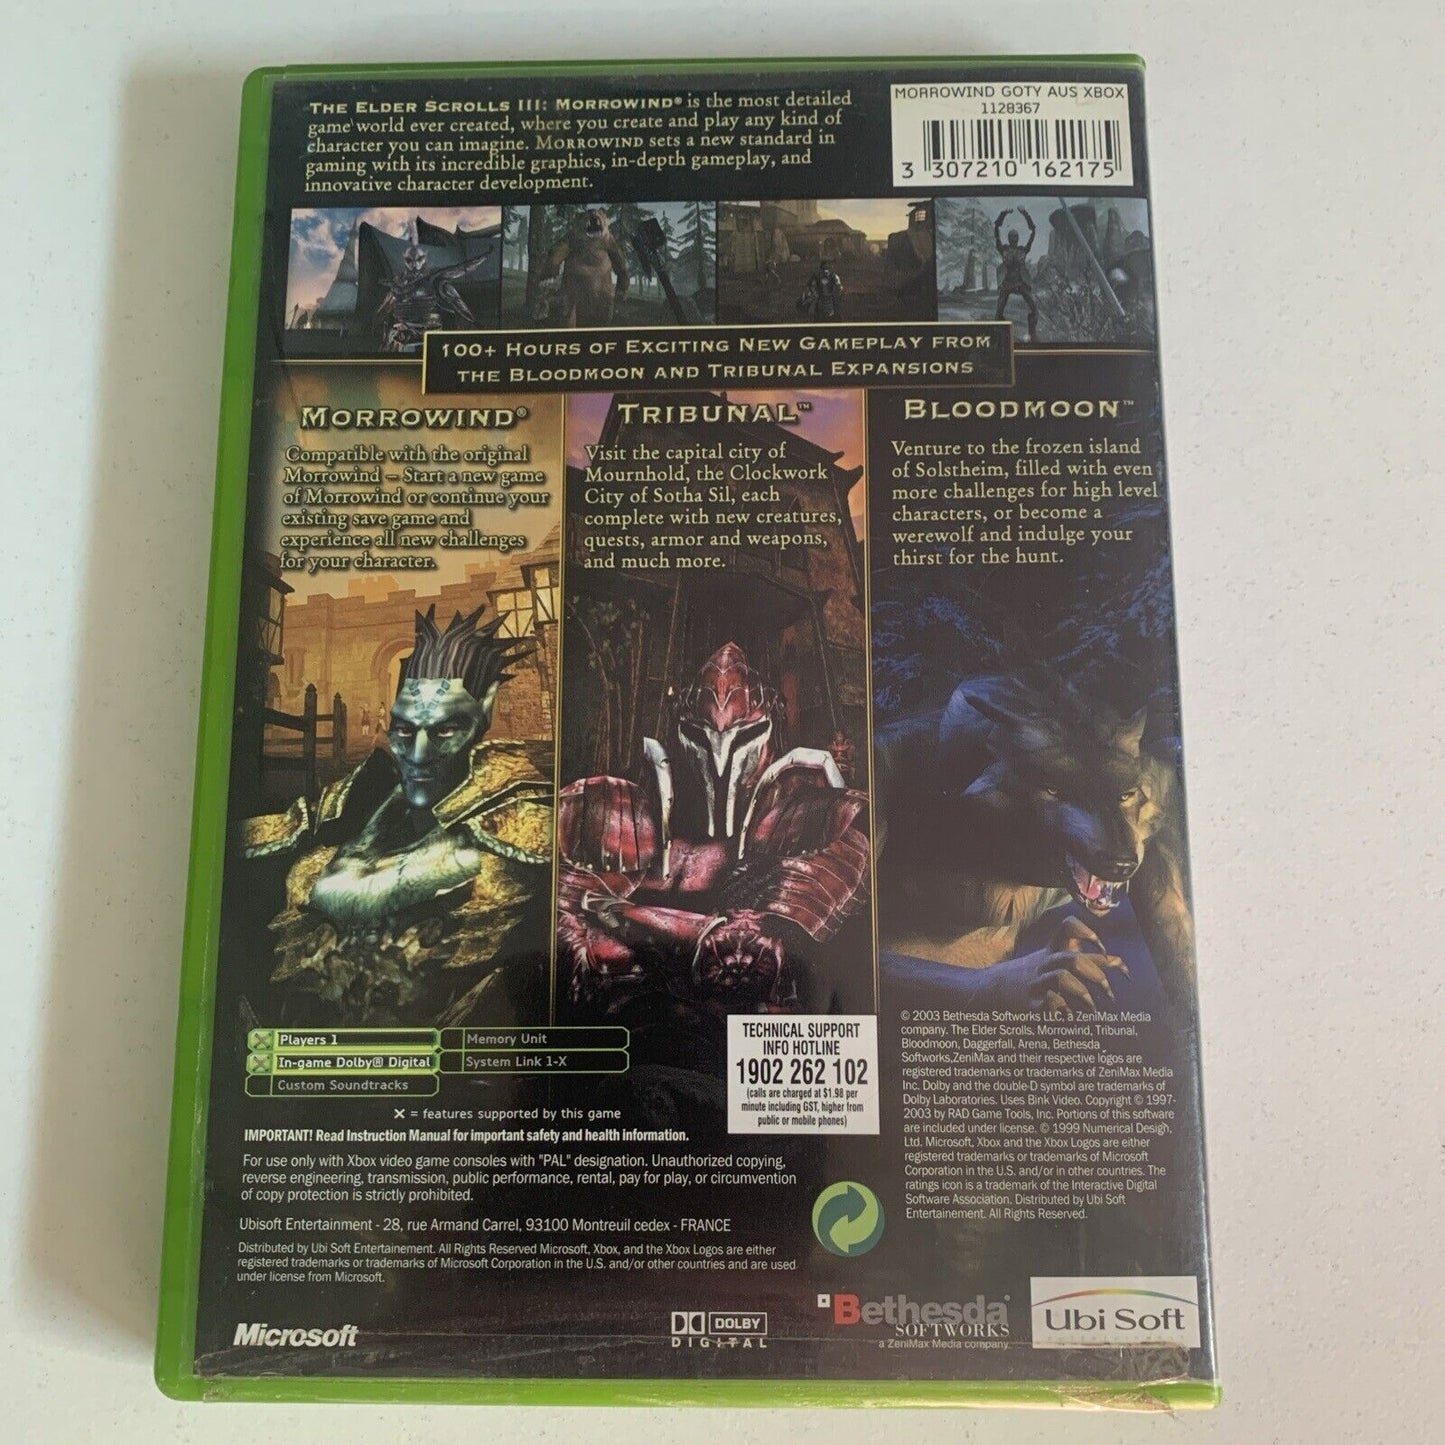 Elder Scrolls III: Morrorwind GOTY edition Xbox Original Game